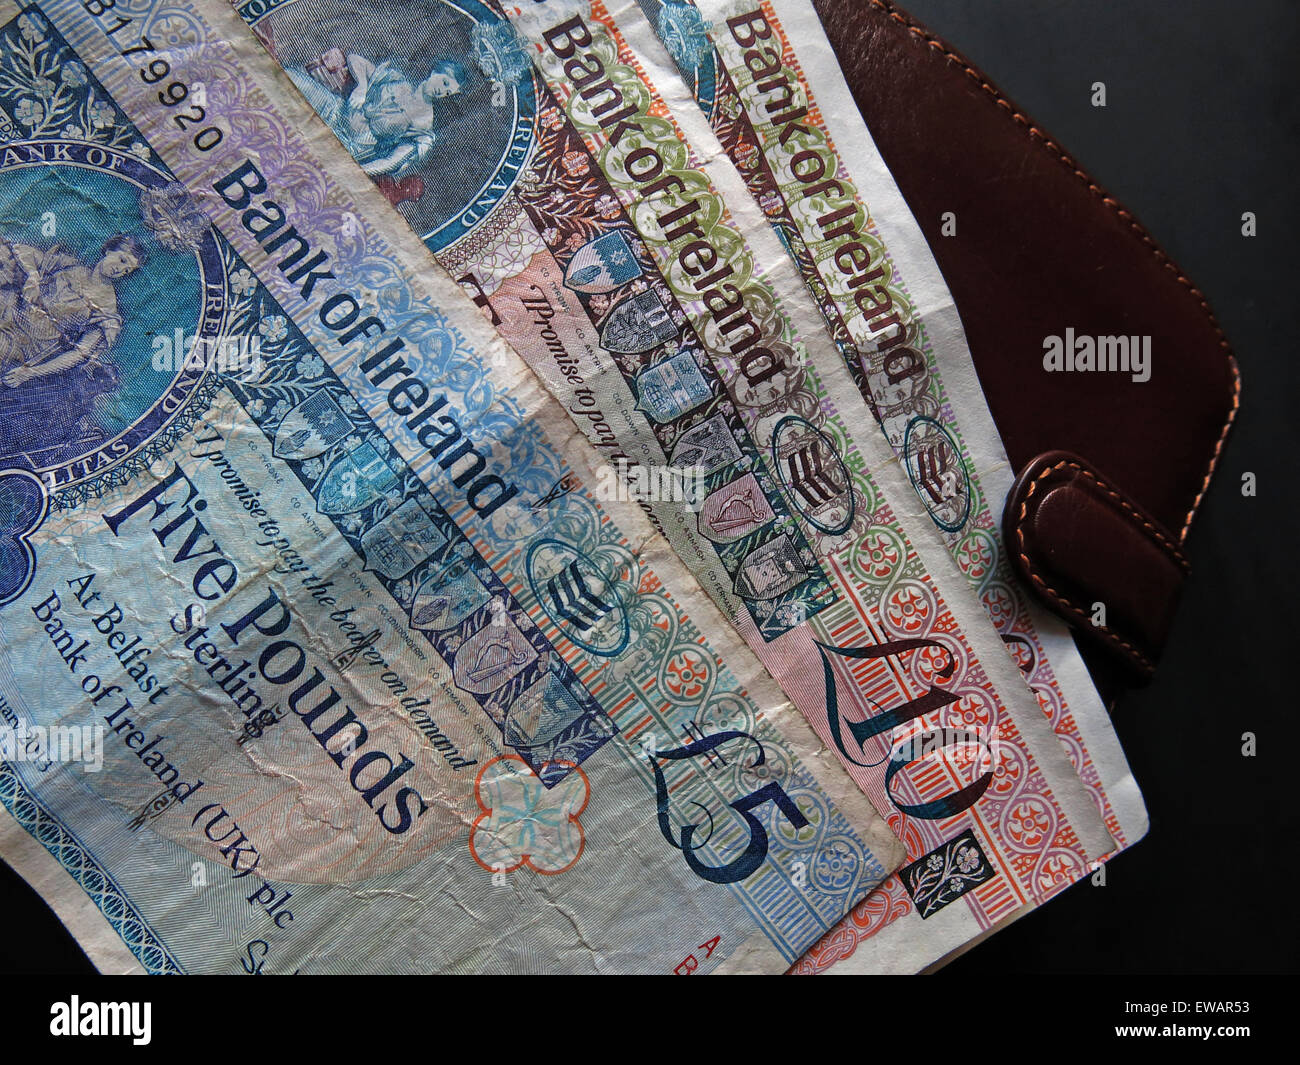 Nord irlandais £5, £10 notes et pièces livre, cours légal à partir de la Banque d'Irlande, de Belfast à côté d'un portefeuille Banque D'Images